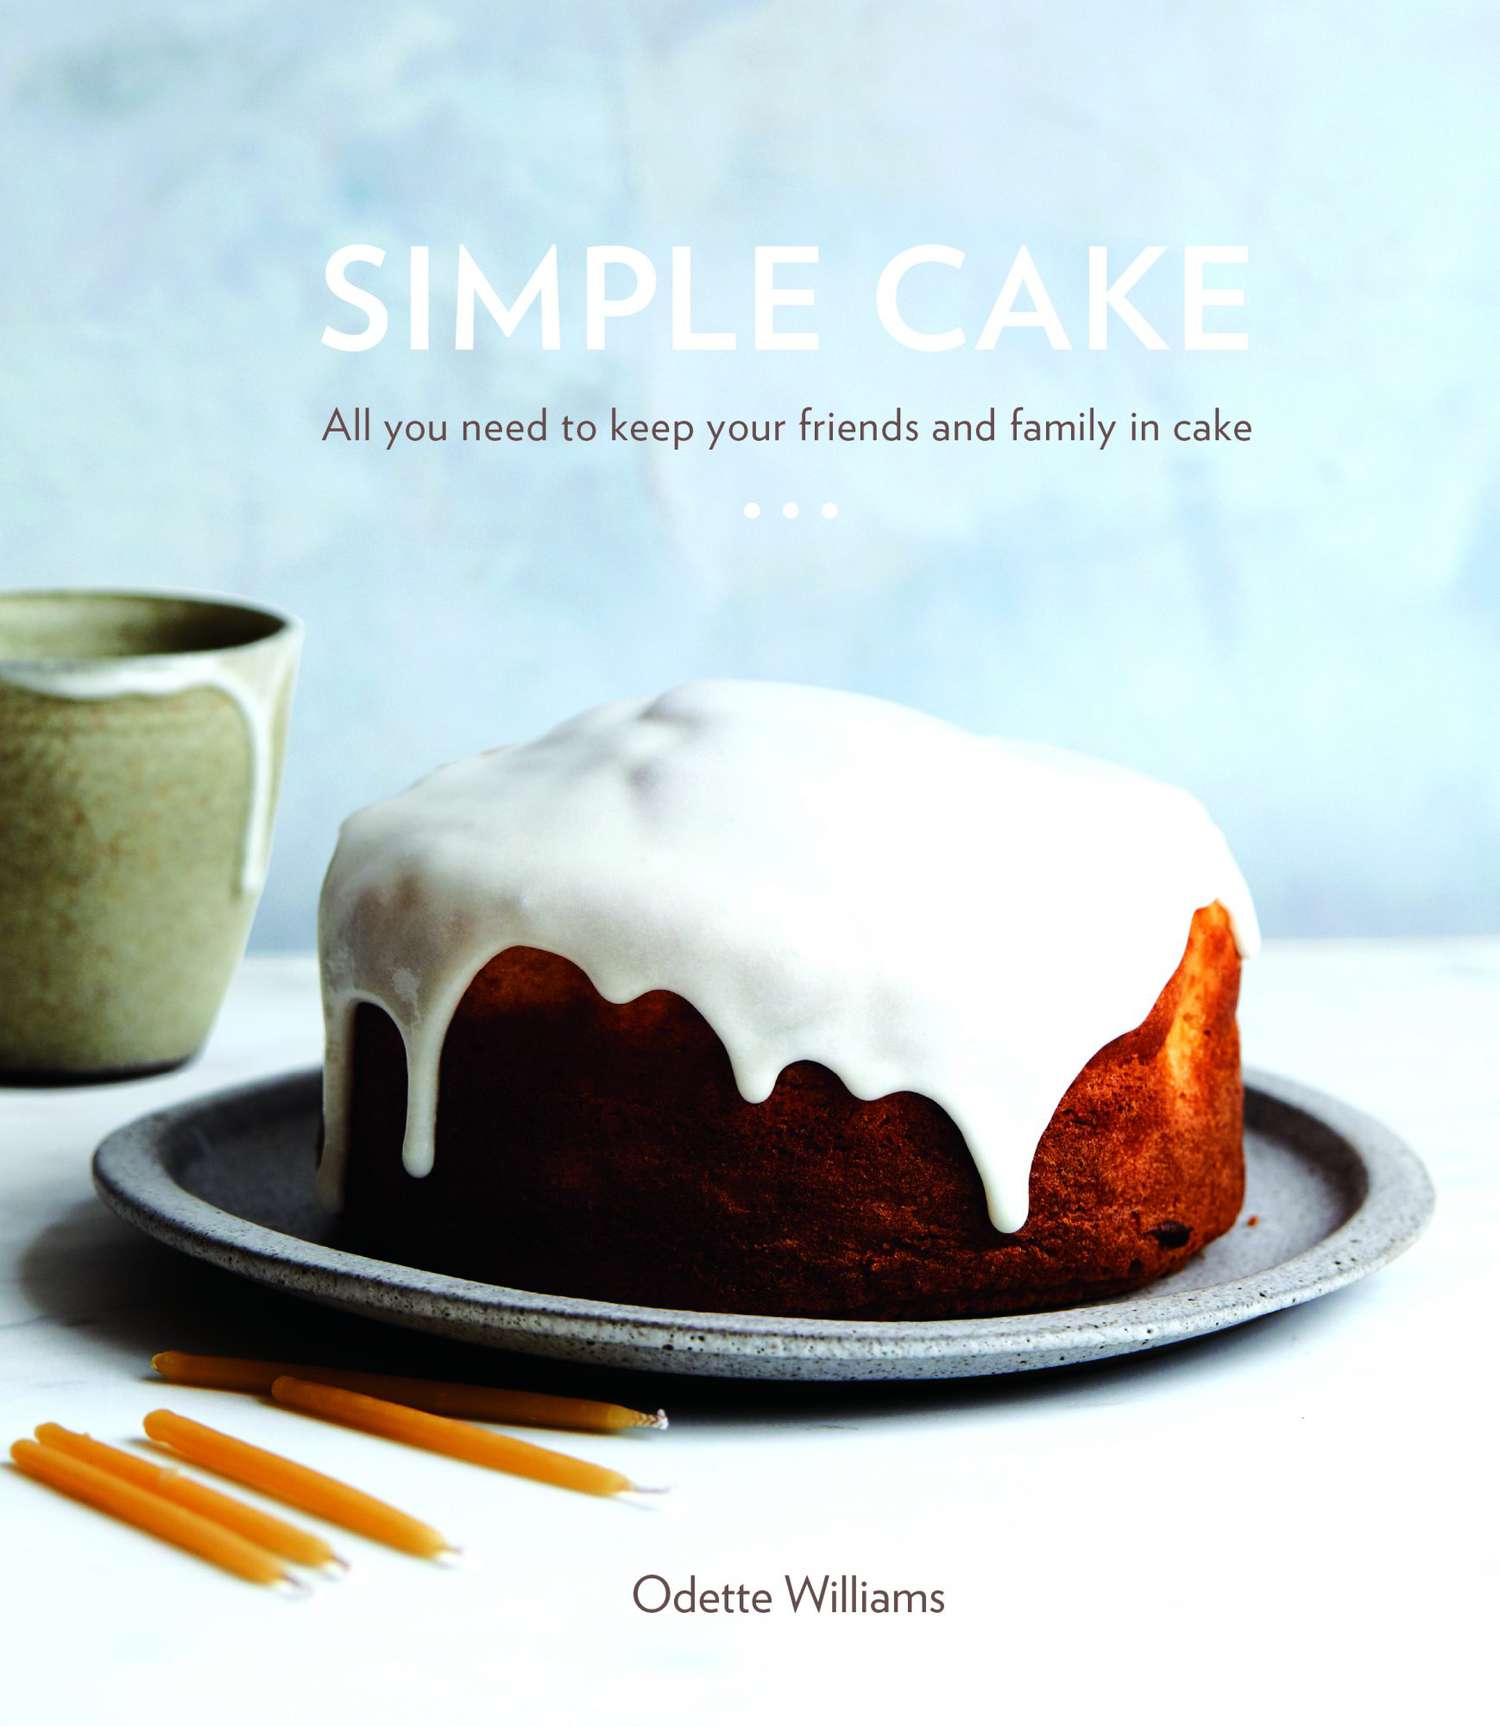 Simple Cake Cookbook